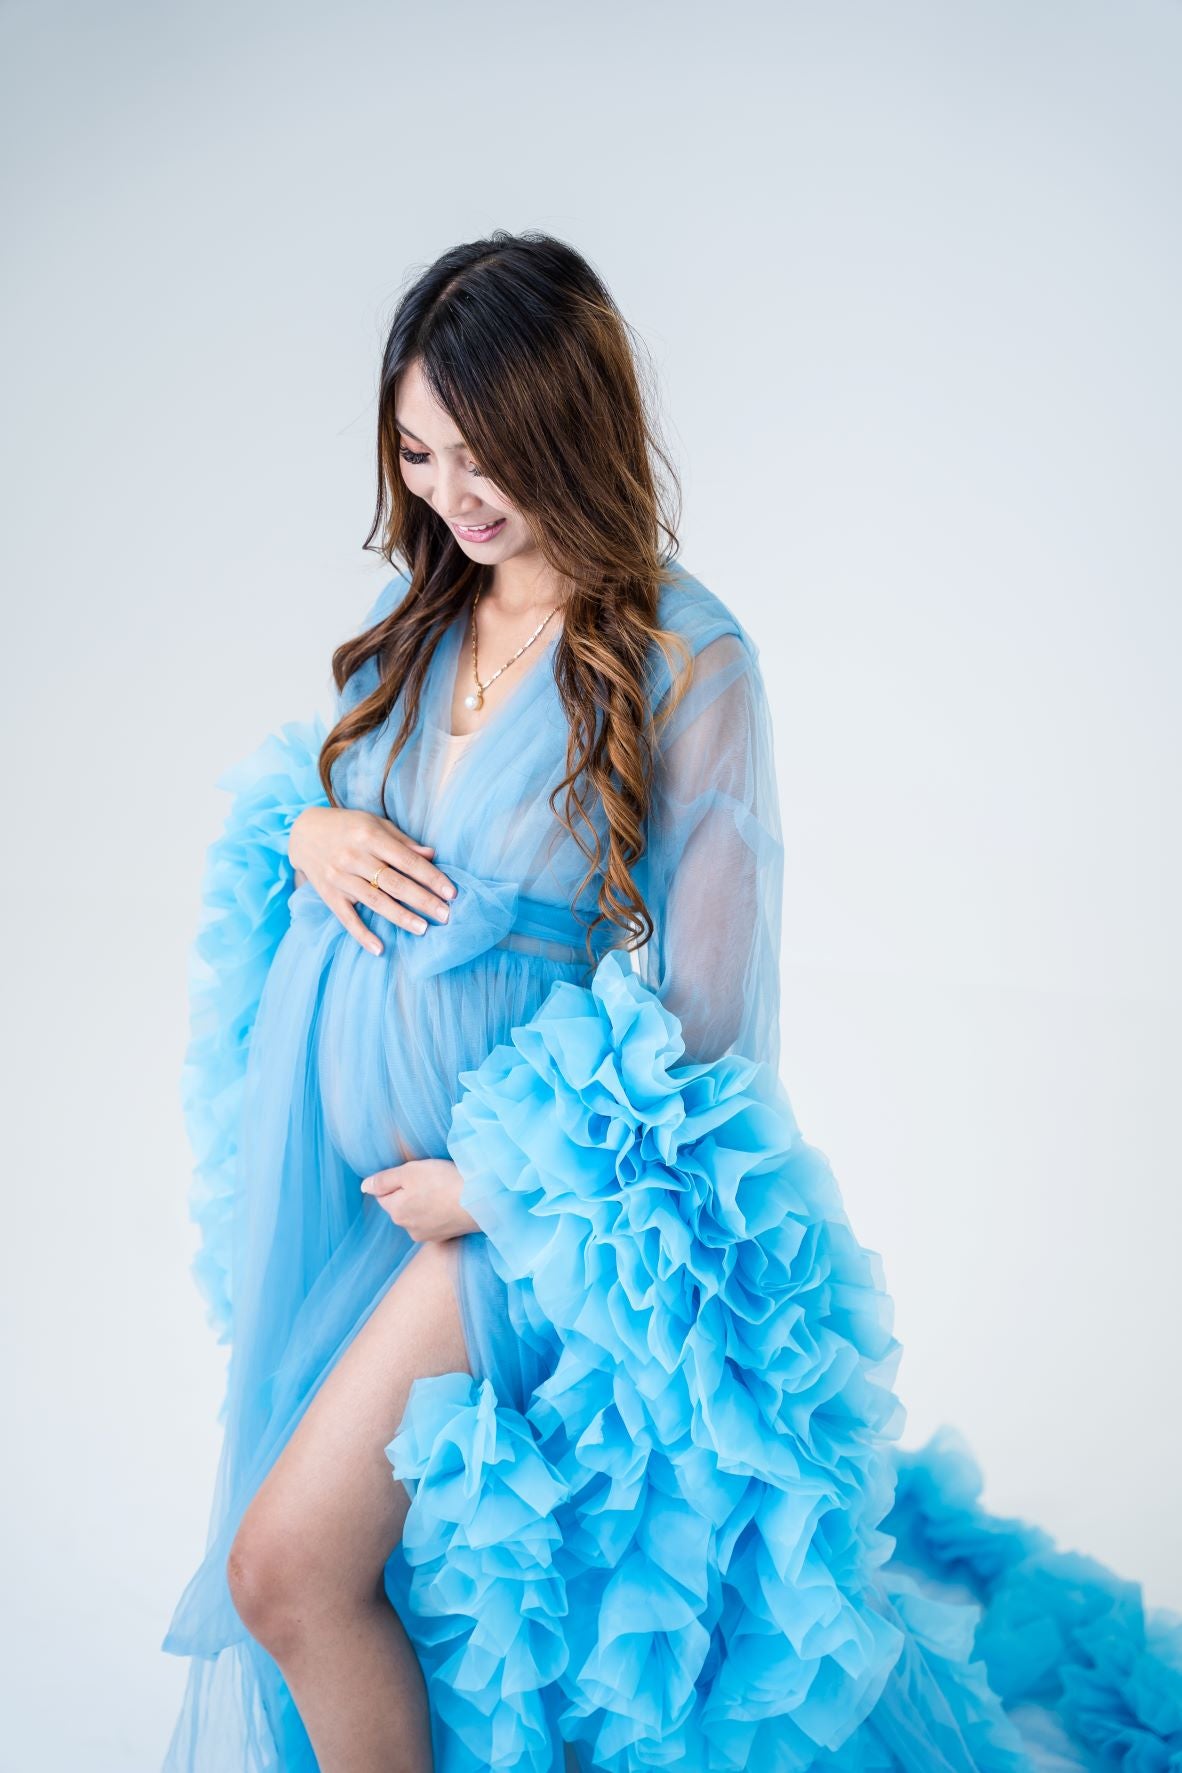 blue tulle robe - maternity baby shower dresses 